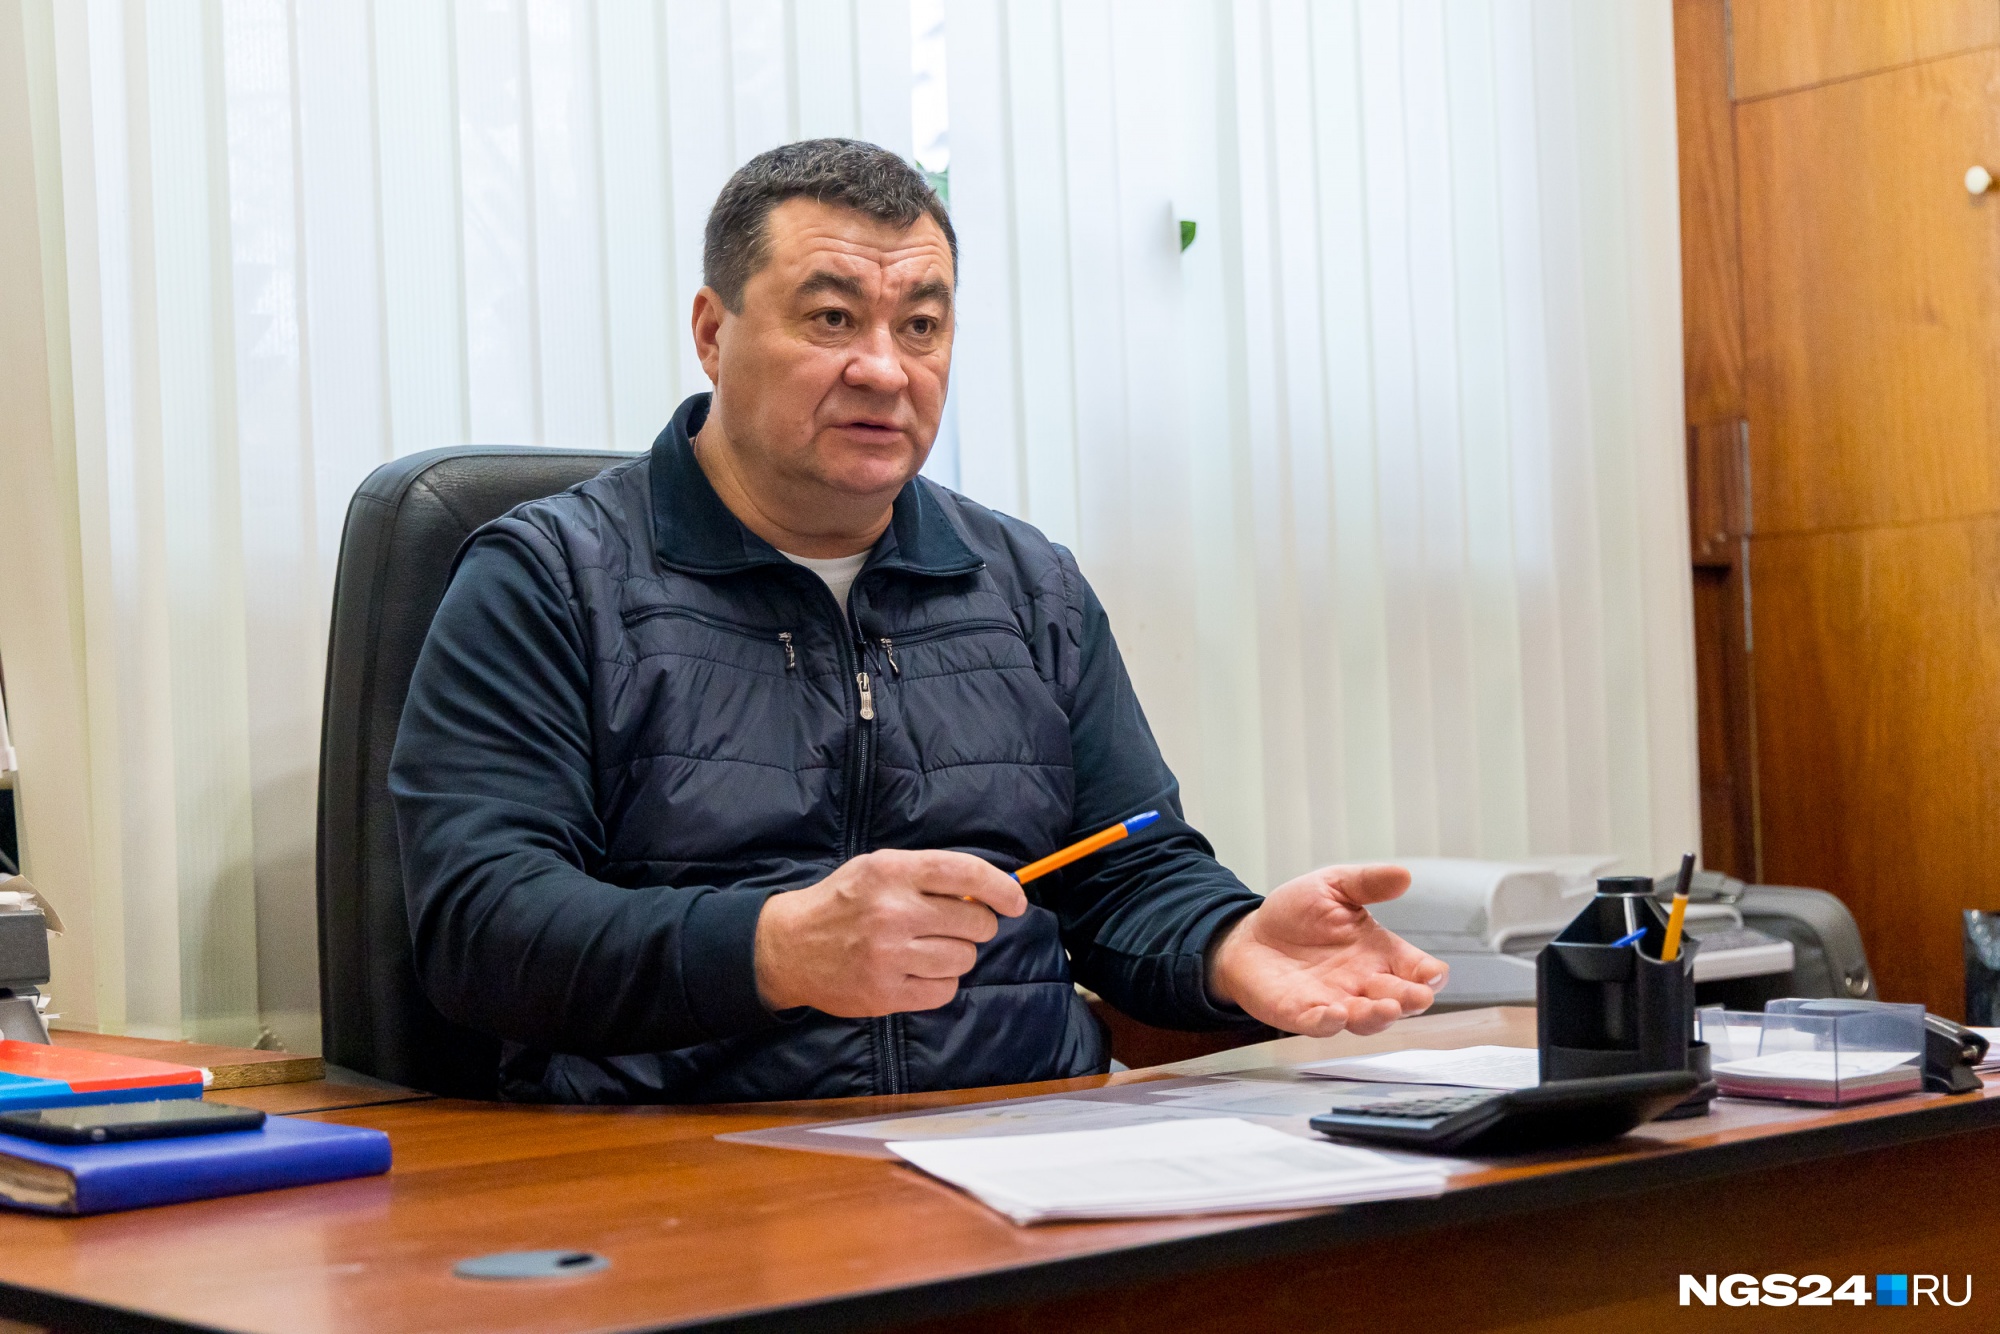 Юрий Николаевич Голиков — руководитель красноярского управления «Росипподромов»